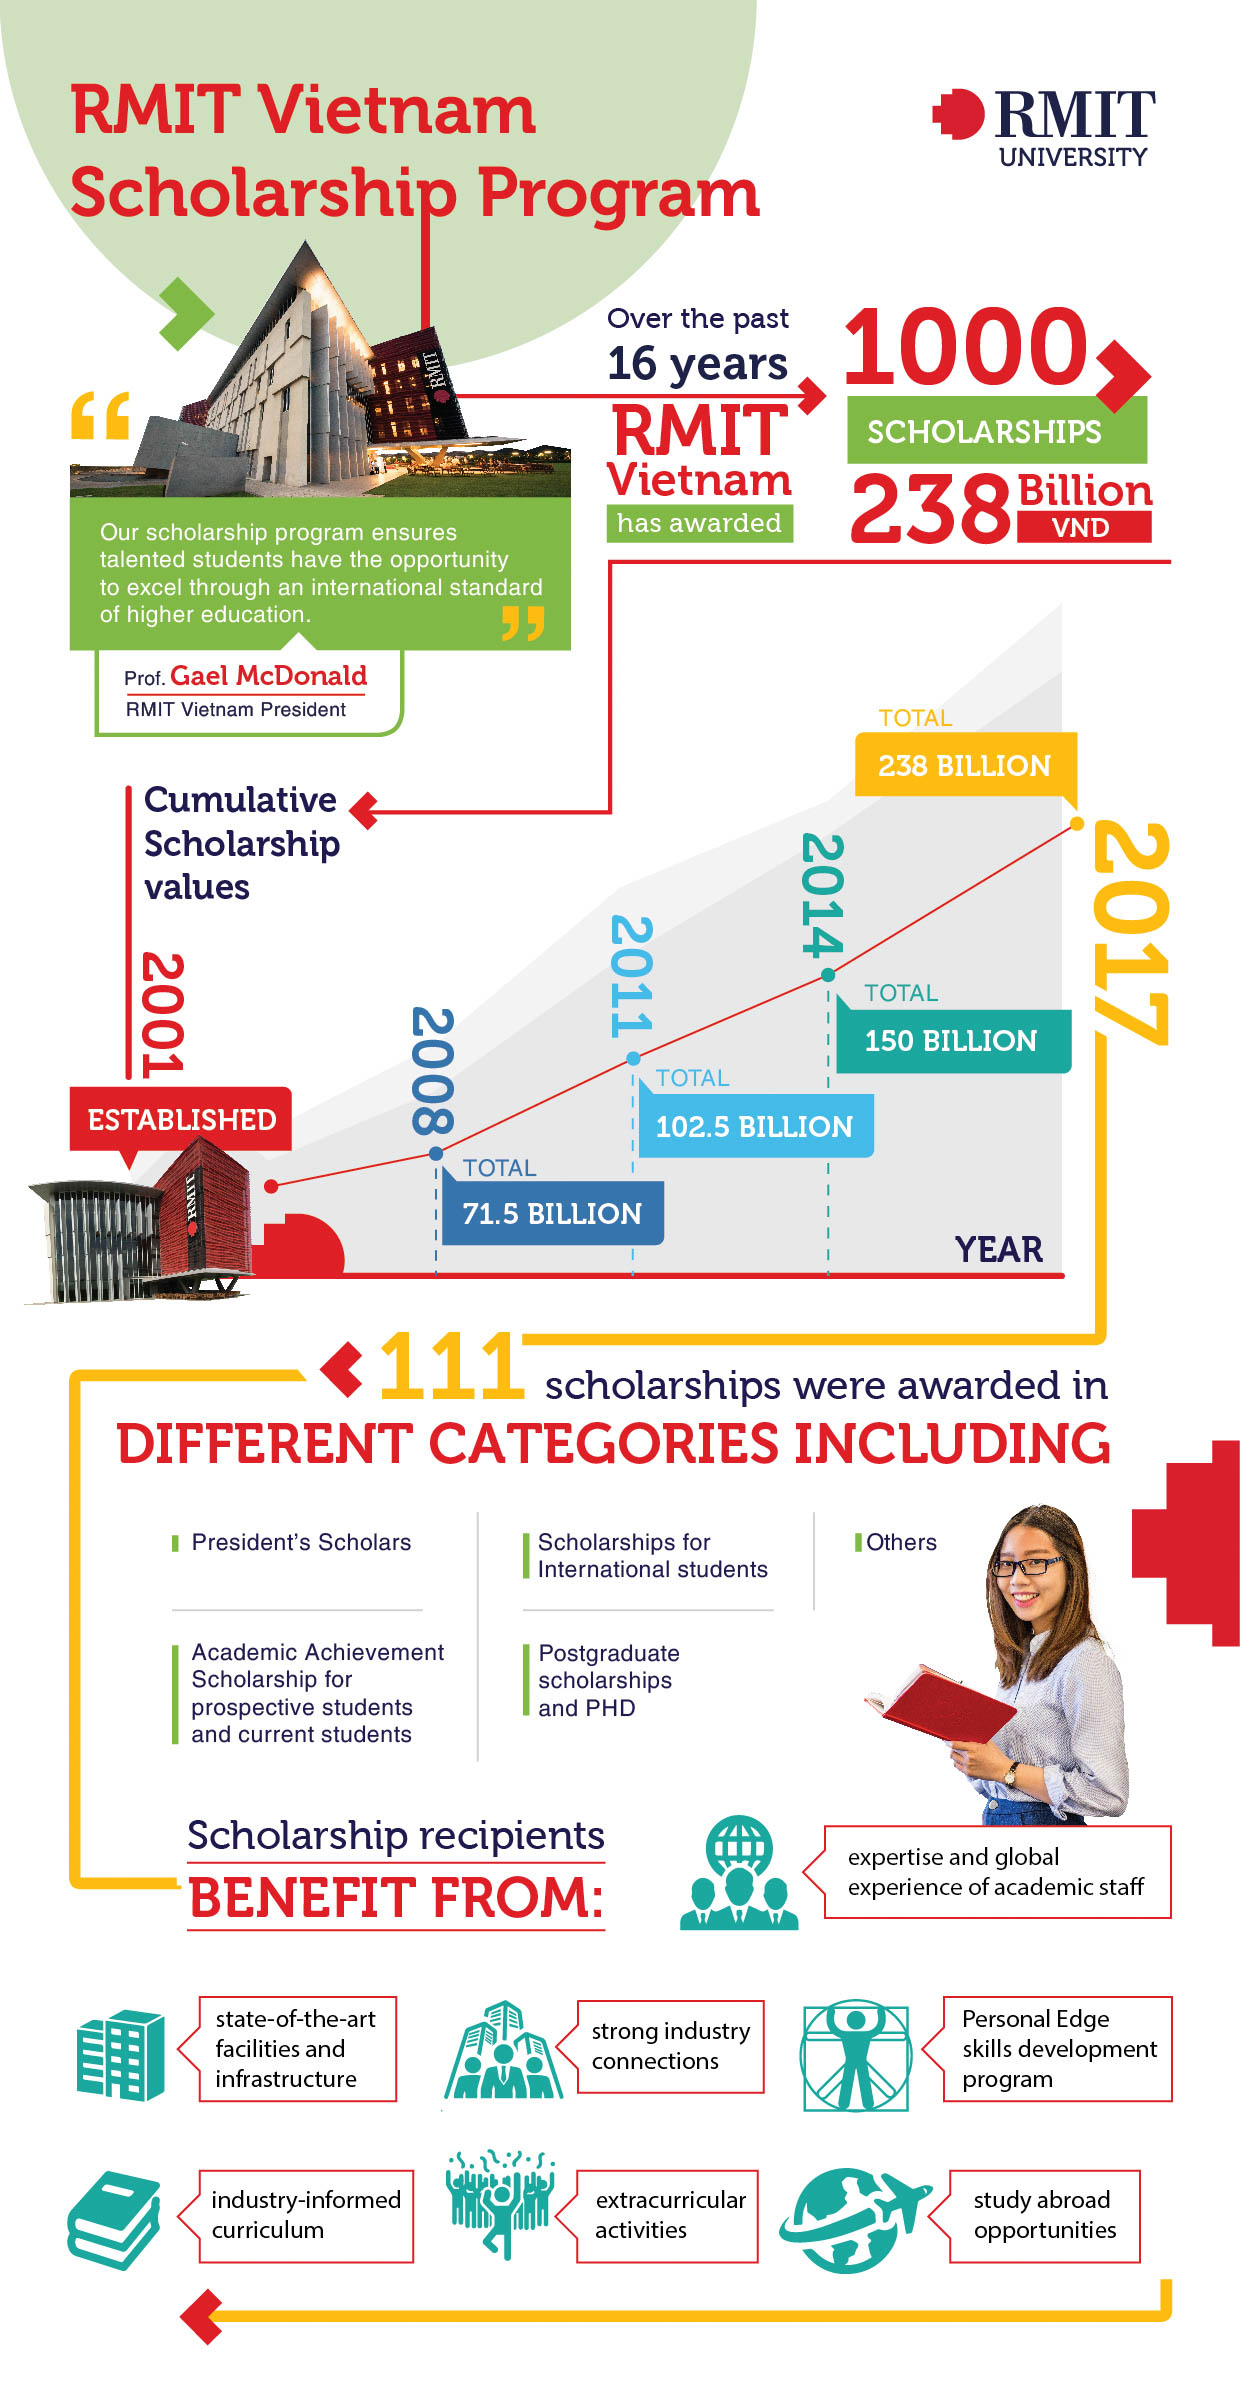 An overview of RMIT Vietnam's scholarship program since its establishment